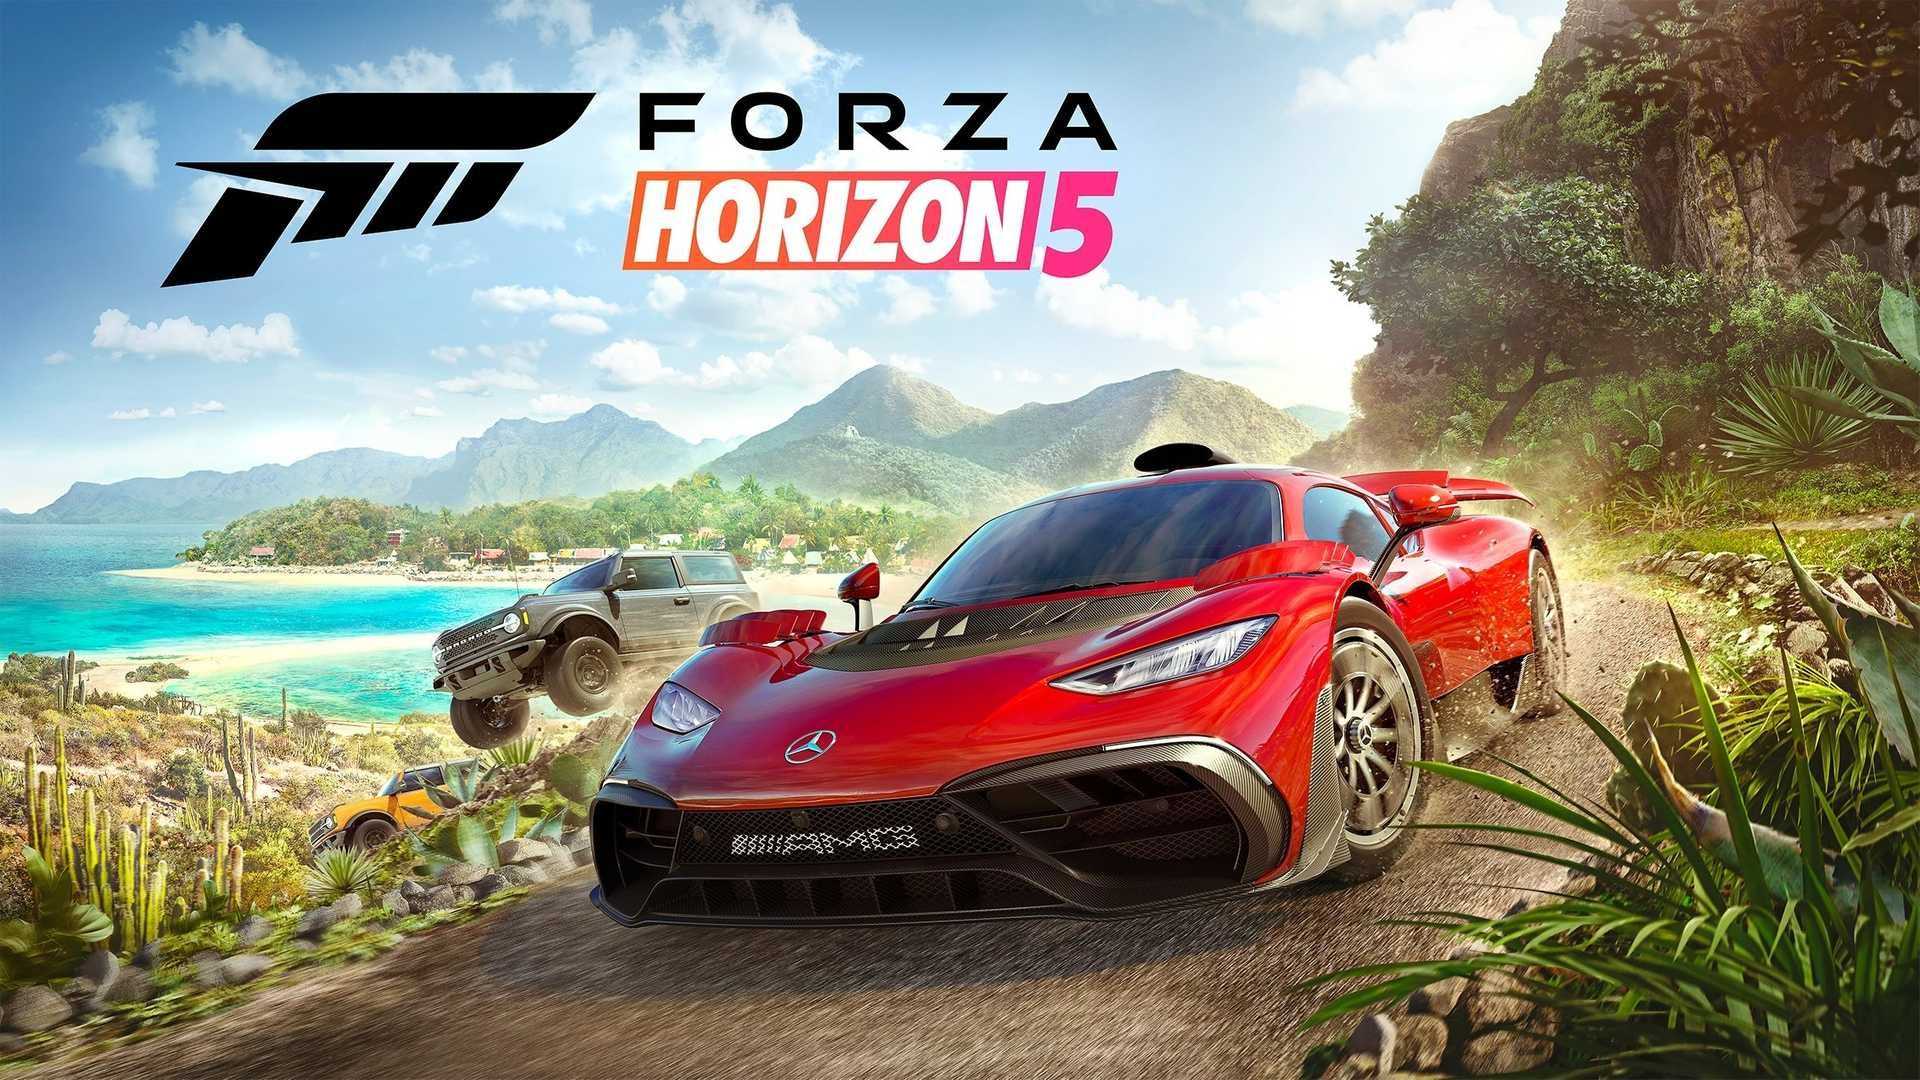 Forza Horizon 5 достигла 6 миллионов игроков за неделю запуска